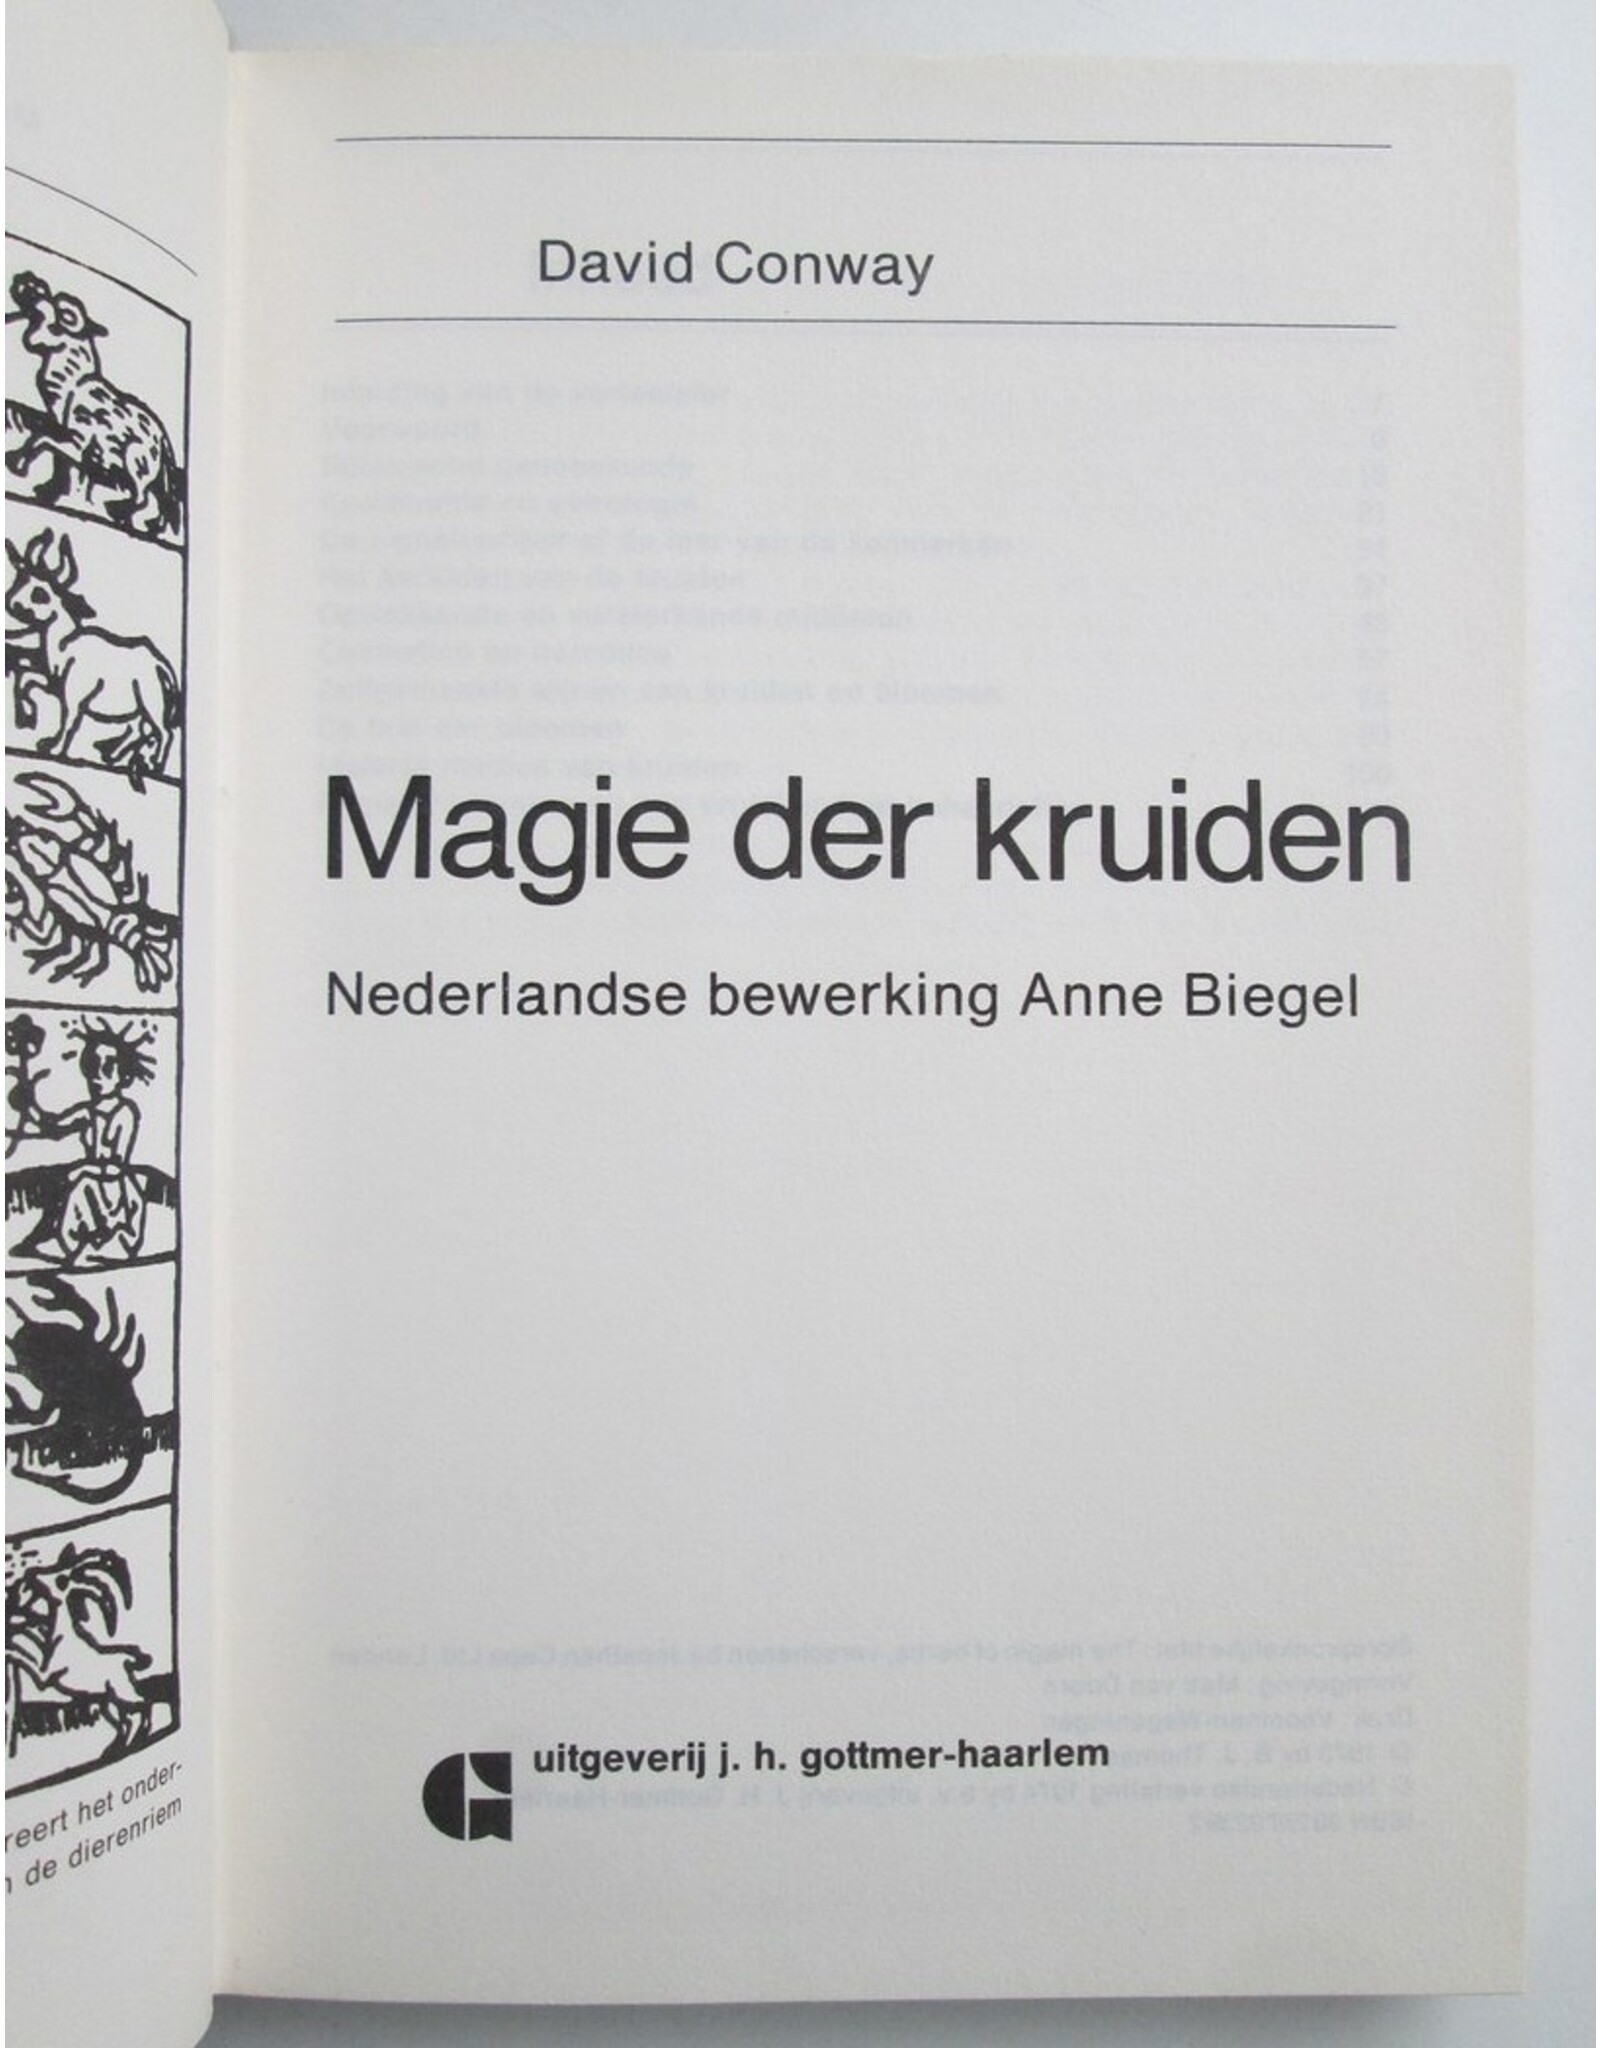 David Conway - Magie der kruiden. Nederlandse bewerking Anne Biegel